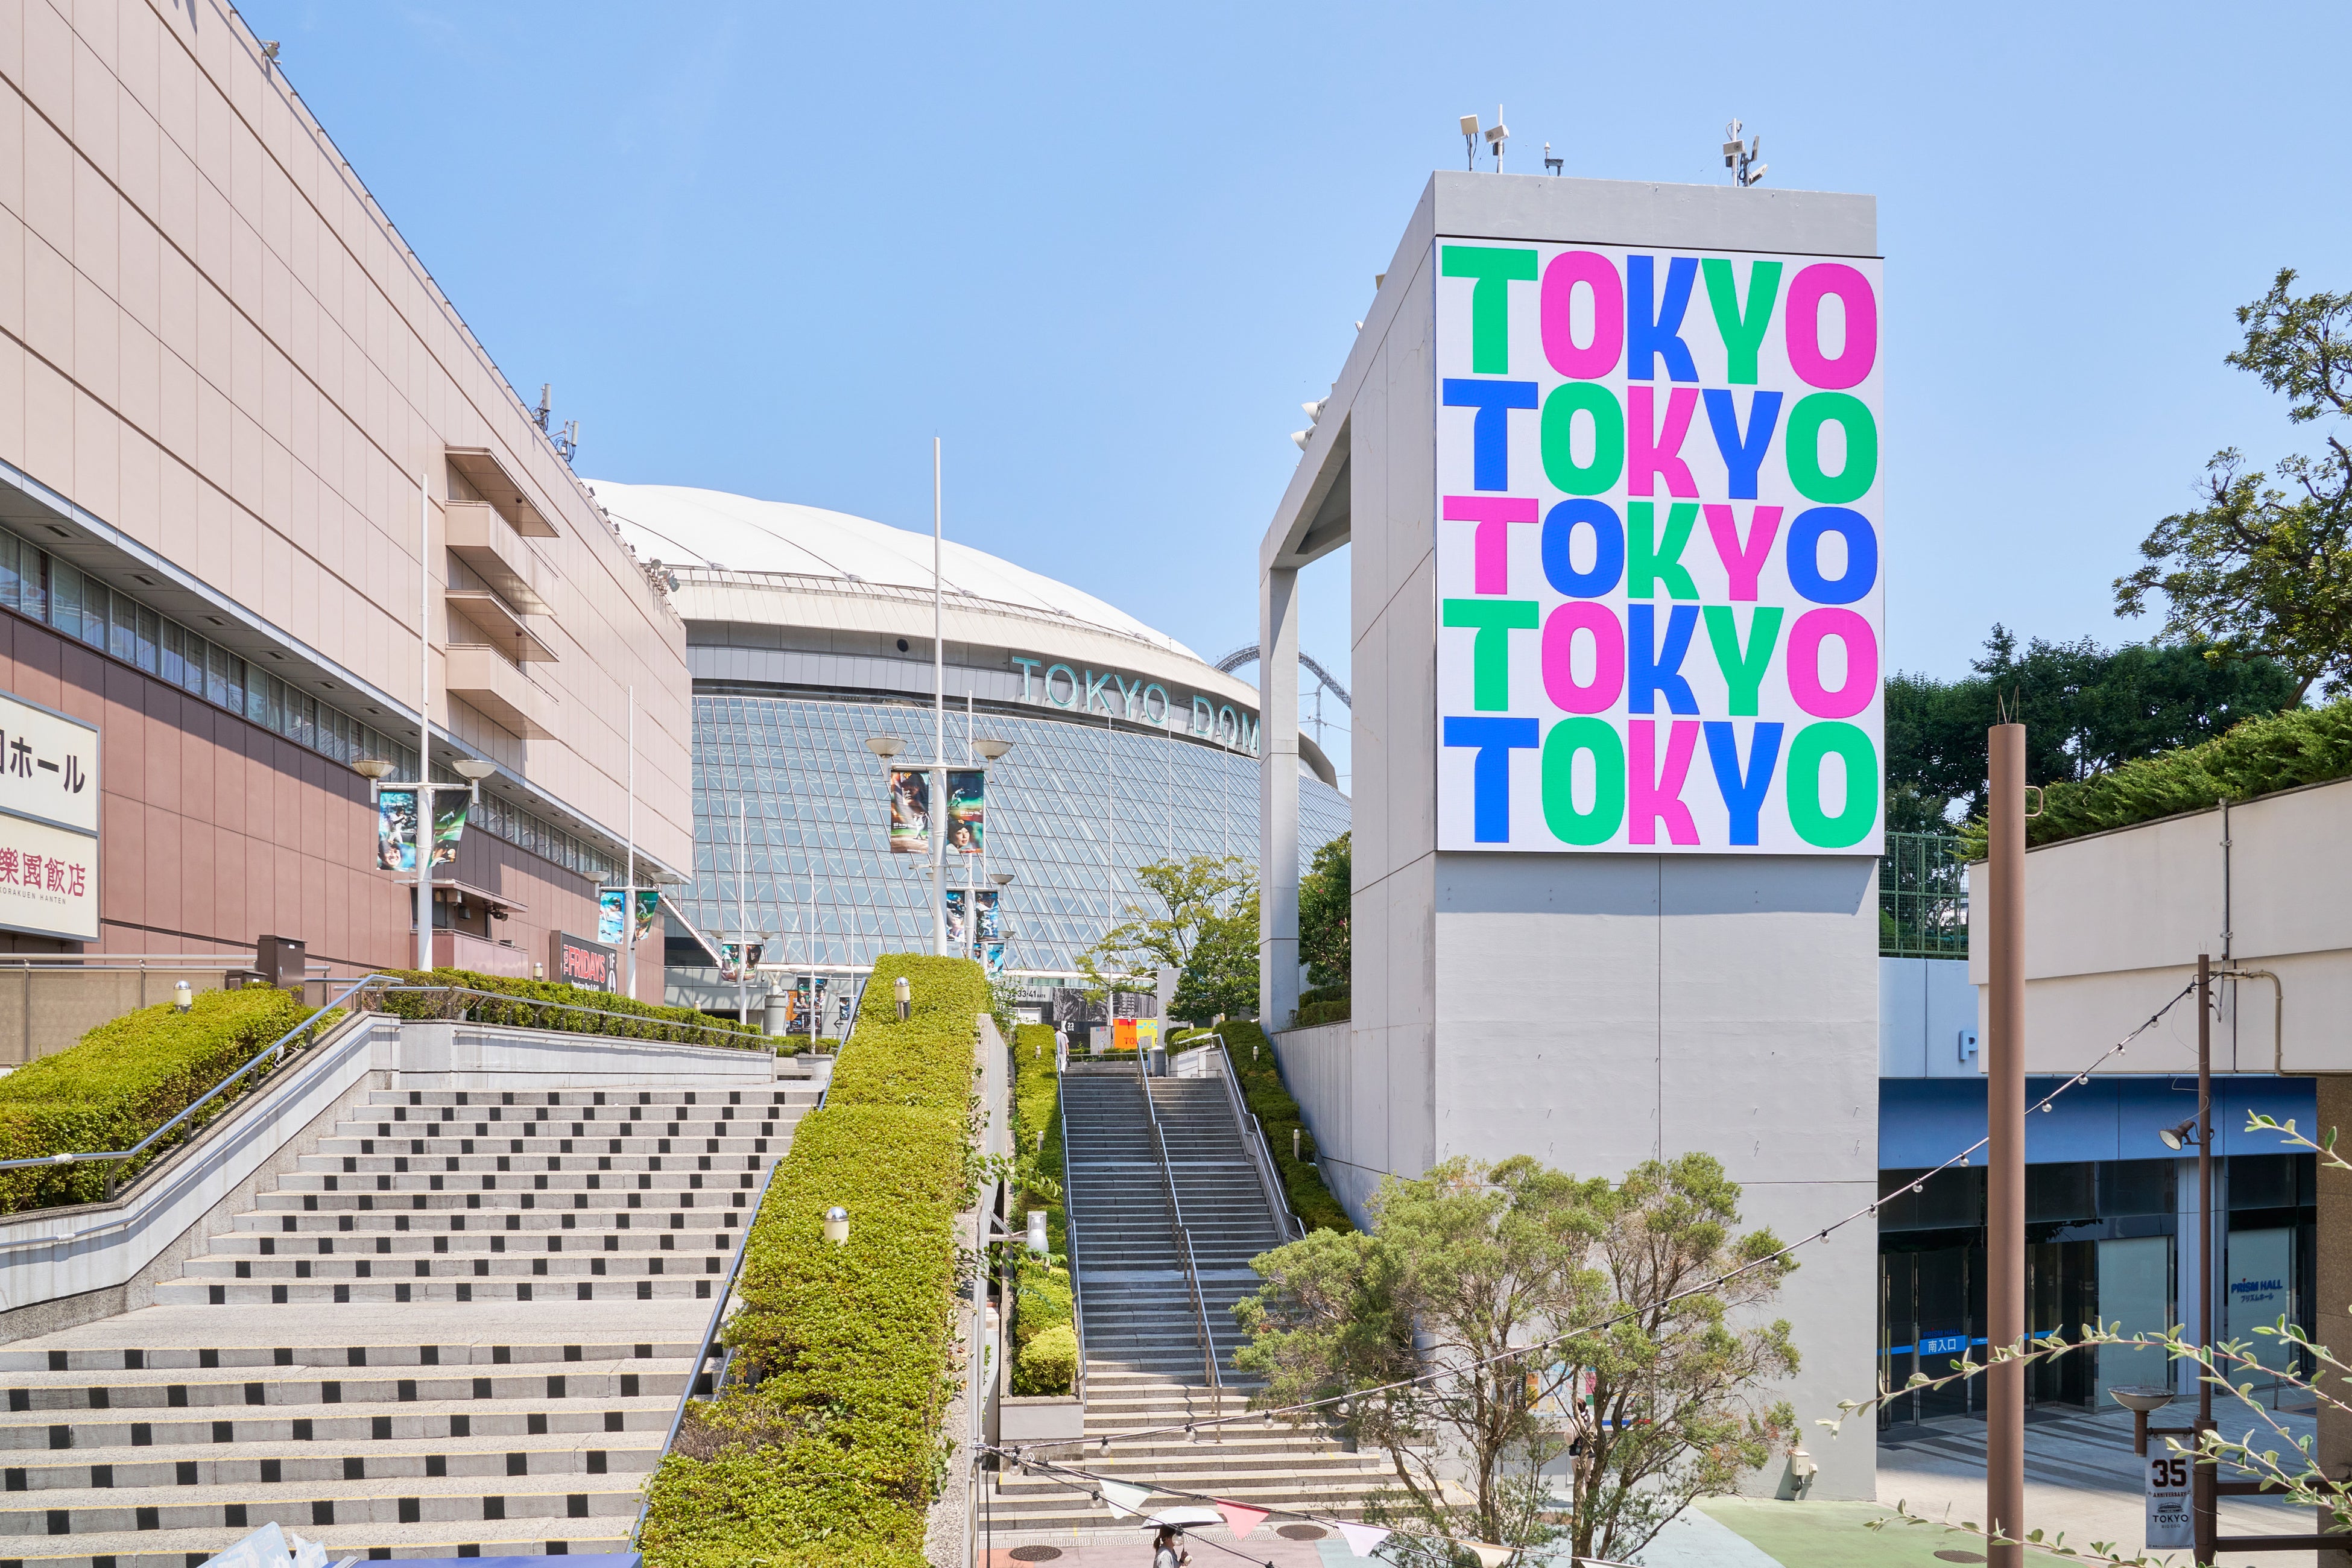 【東京ドームシティ ブランディング活動 続報】東京ドームシティのロゴマーク・大型ビジョン展開が国内外のデ...